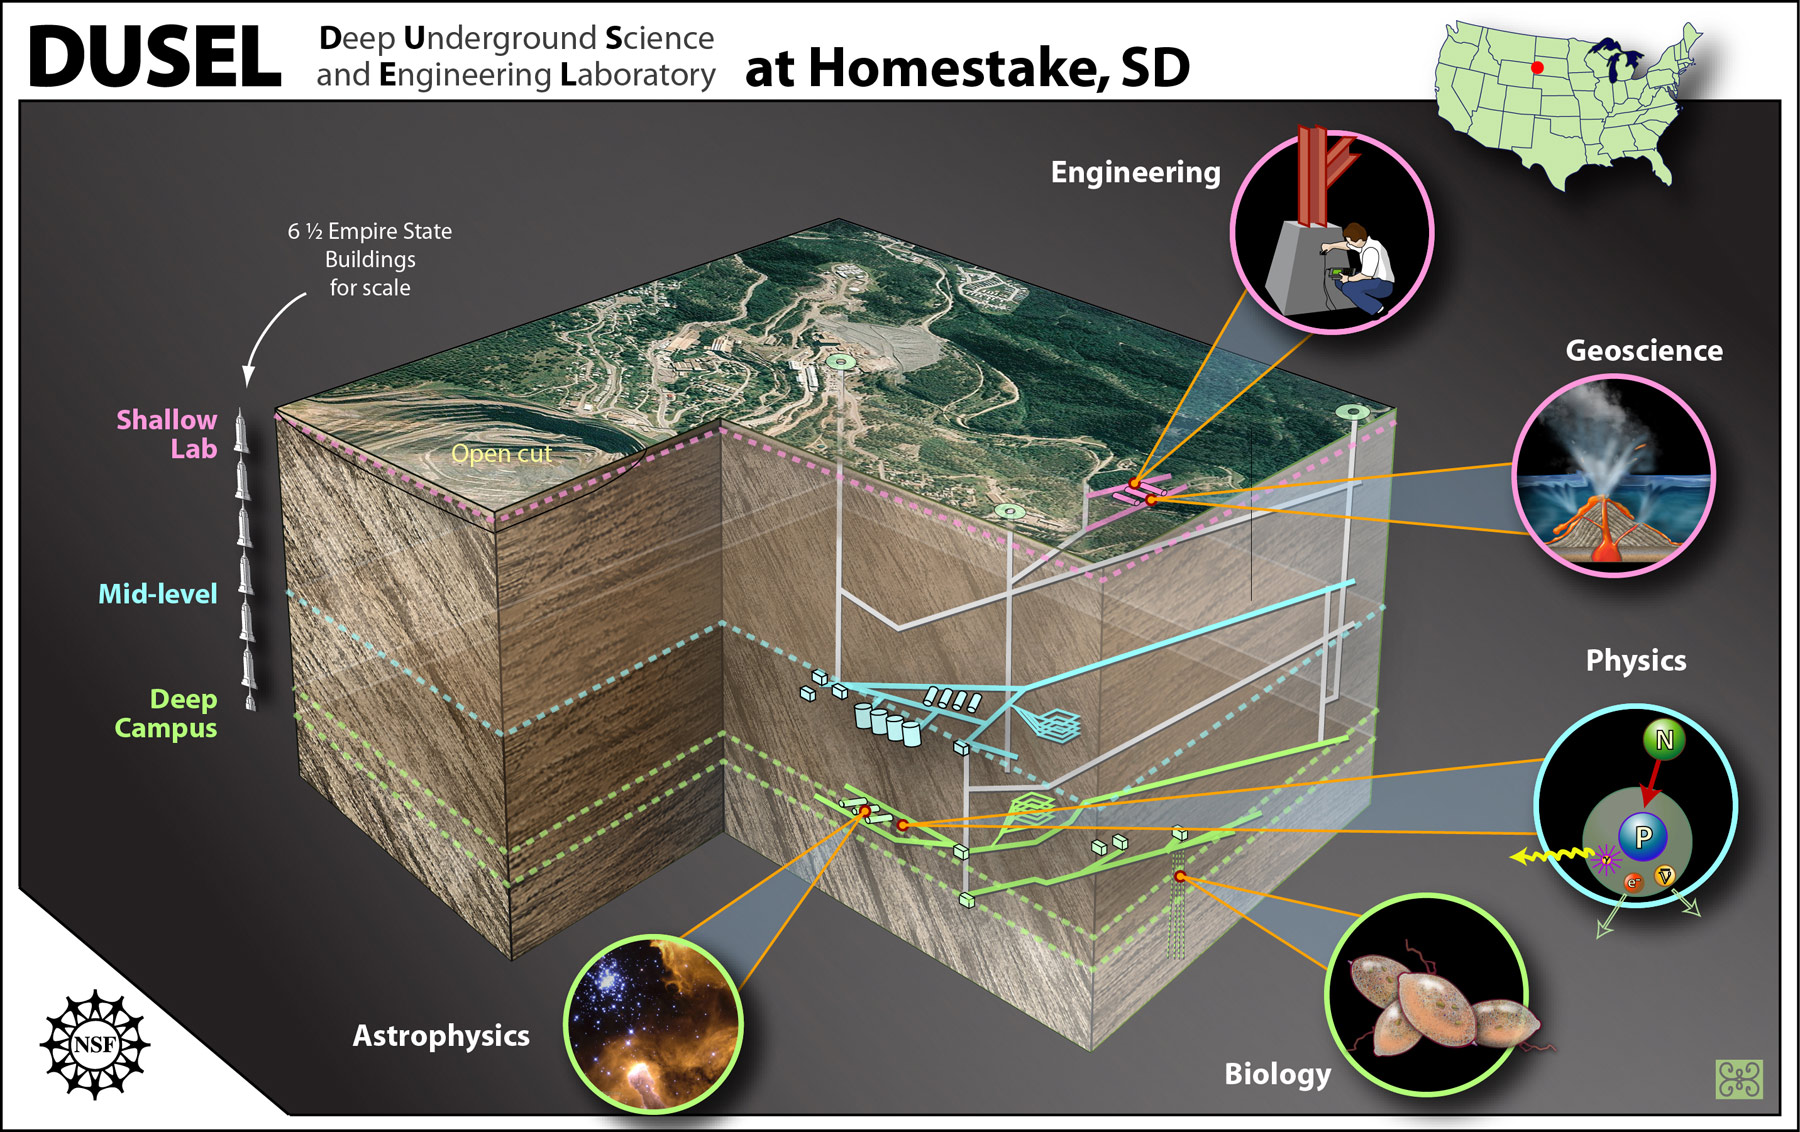 Schéma montrant un plan de la mine de Homestake et les localisations des futures expériences qui y seront menées en microbiologie, géophysique, astrophysique, etc. Crédit : Zina Deretsky, National Science Foundation